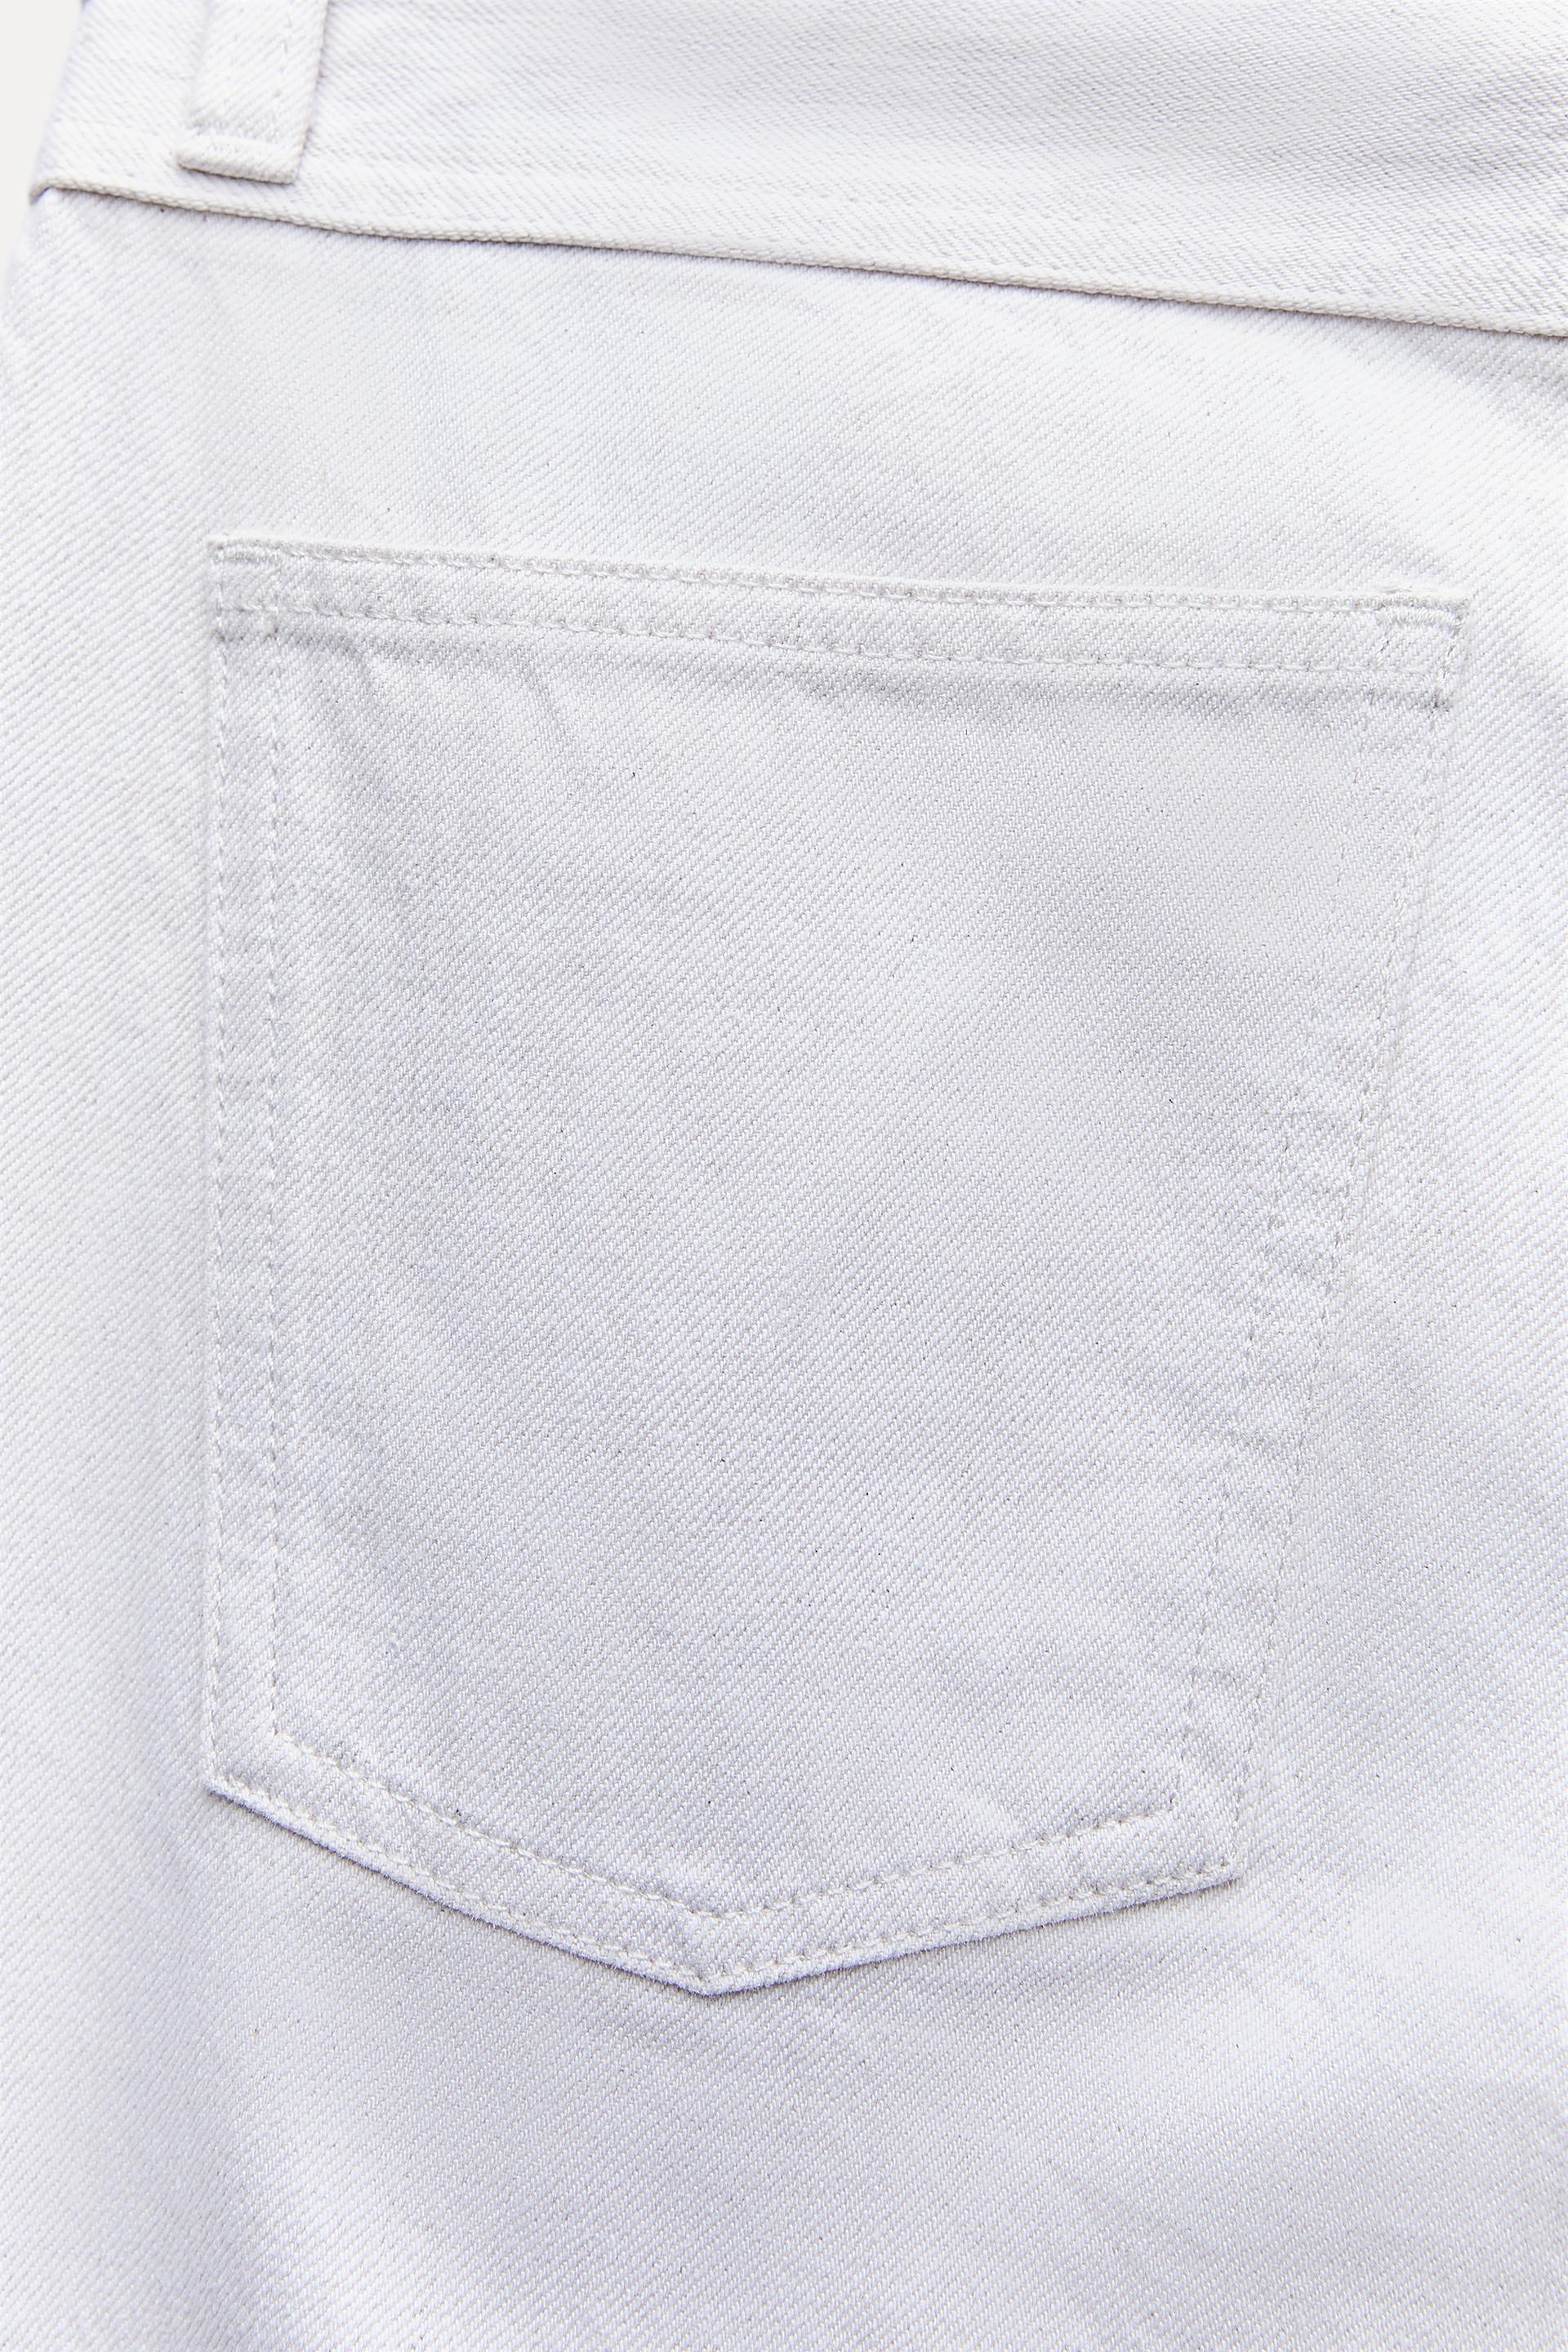 Cabi Zara Terez Womens Blouse Top Pants Jeans White Size XS L 2